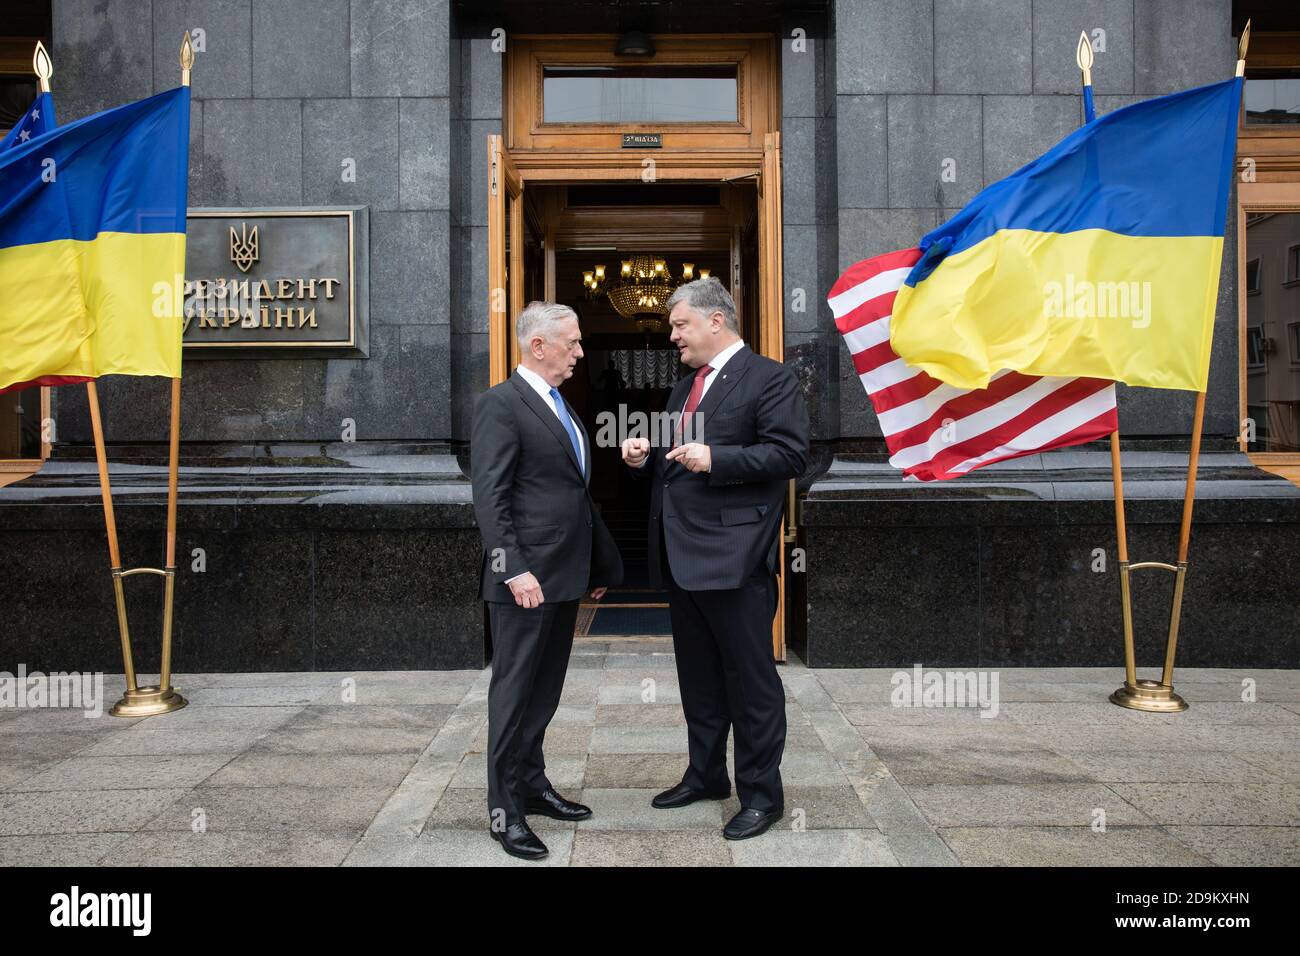 KIEW, UKRAINE - 24. August 2017: Treffen des ukrainischen Präsidenten Petro Poroschenko und des US-Verteidigungsministers James Mattis. Stockfoto